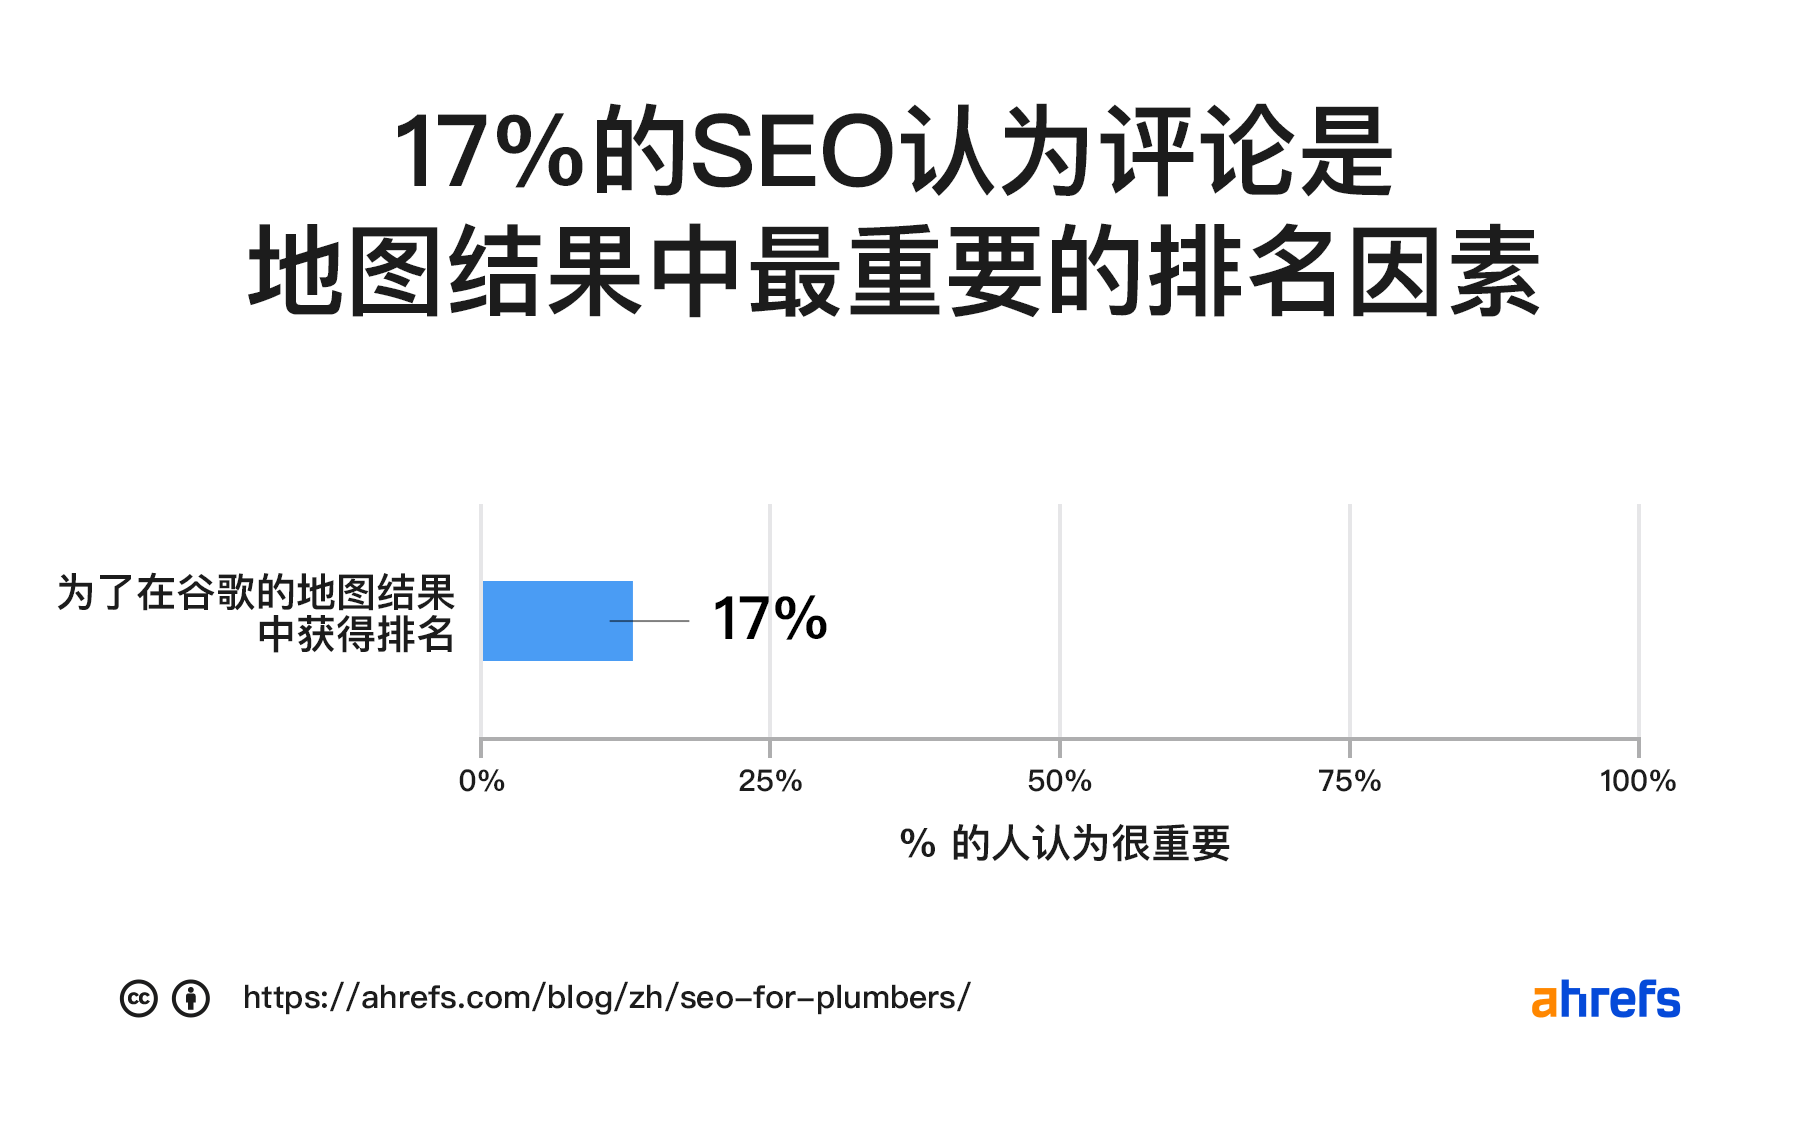 17% 的 SEO 认为评论是地图结果排名的重要因素